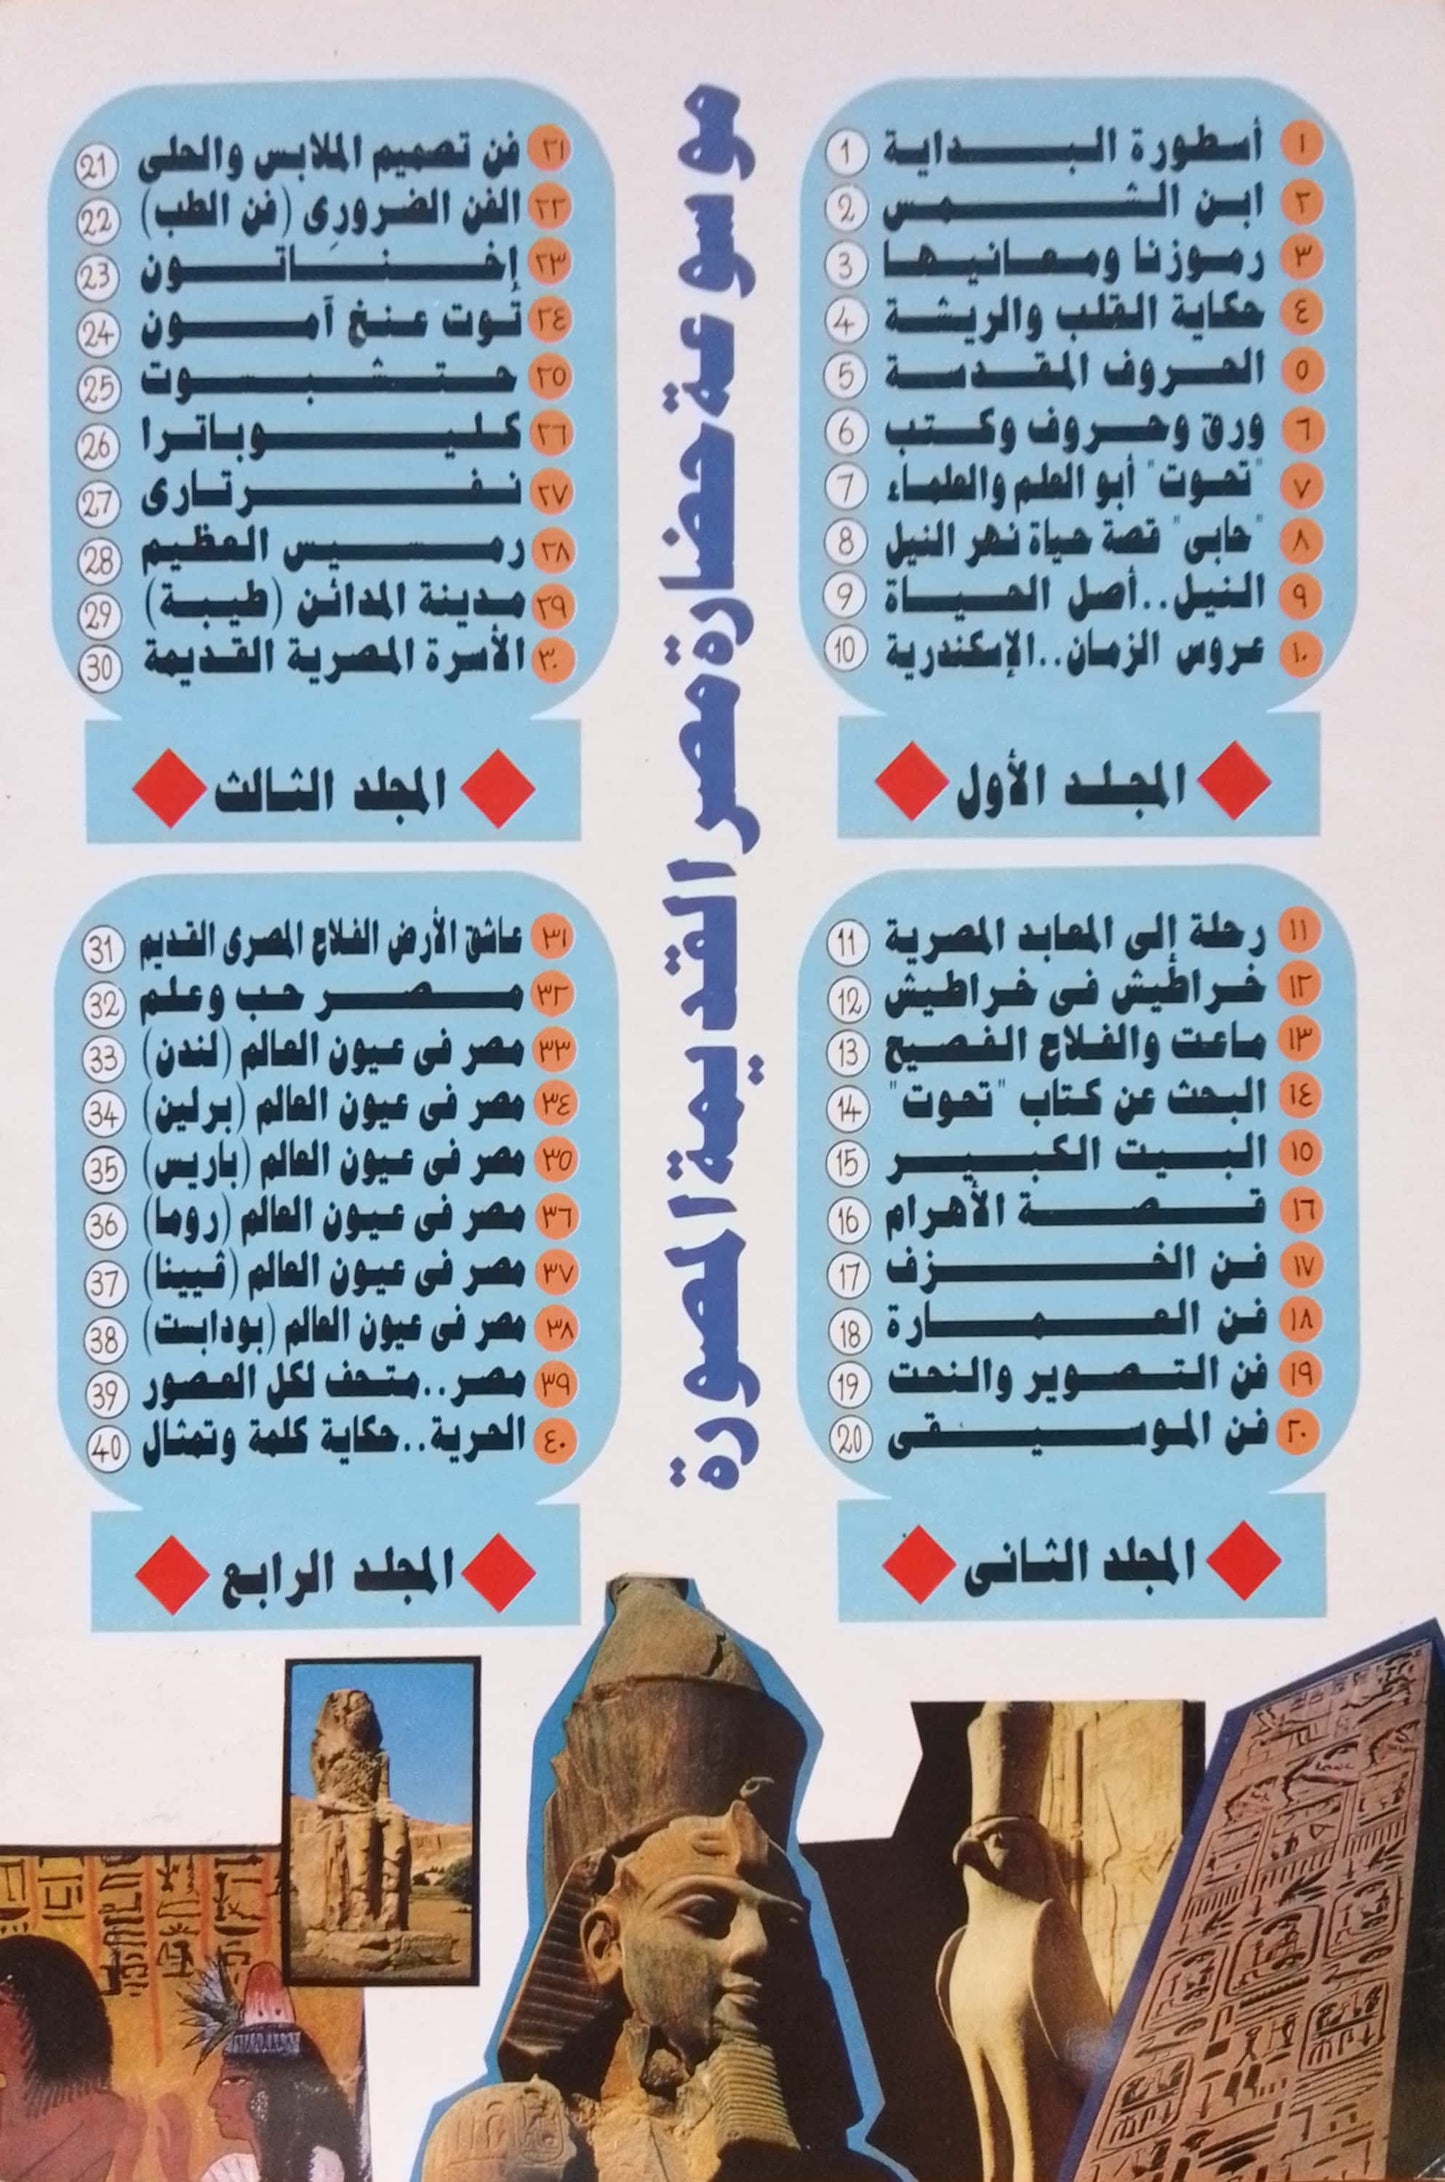 ورق وحروف وكتب - سلسلة موسوعة حضارة مصر القديمة